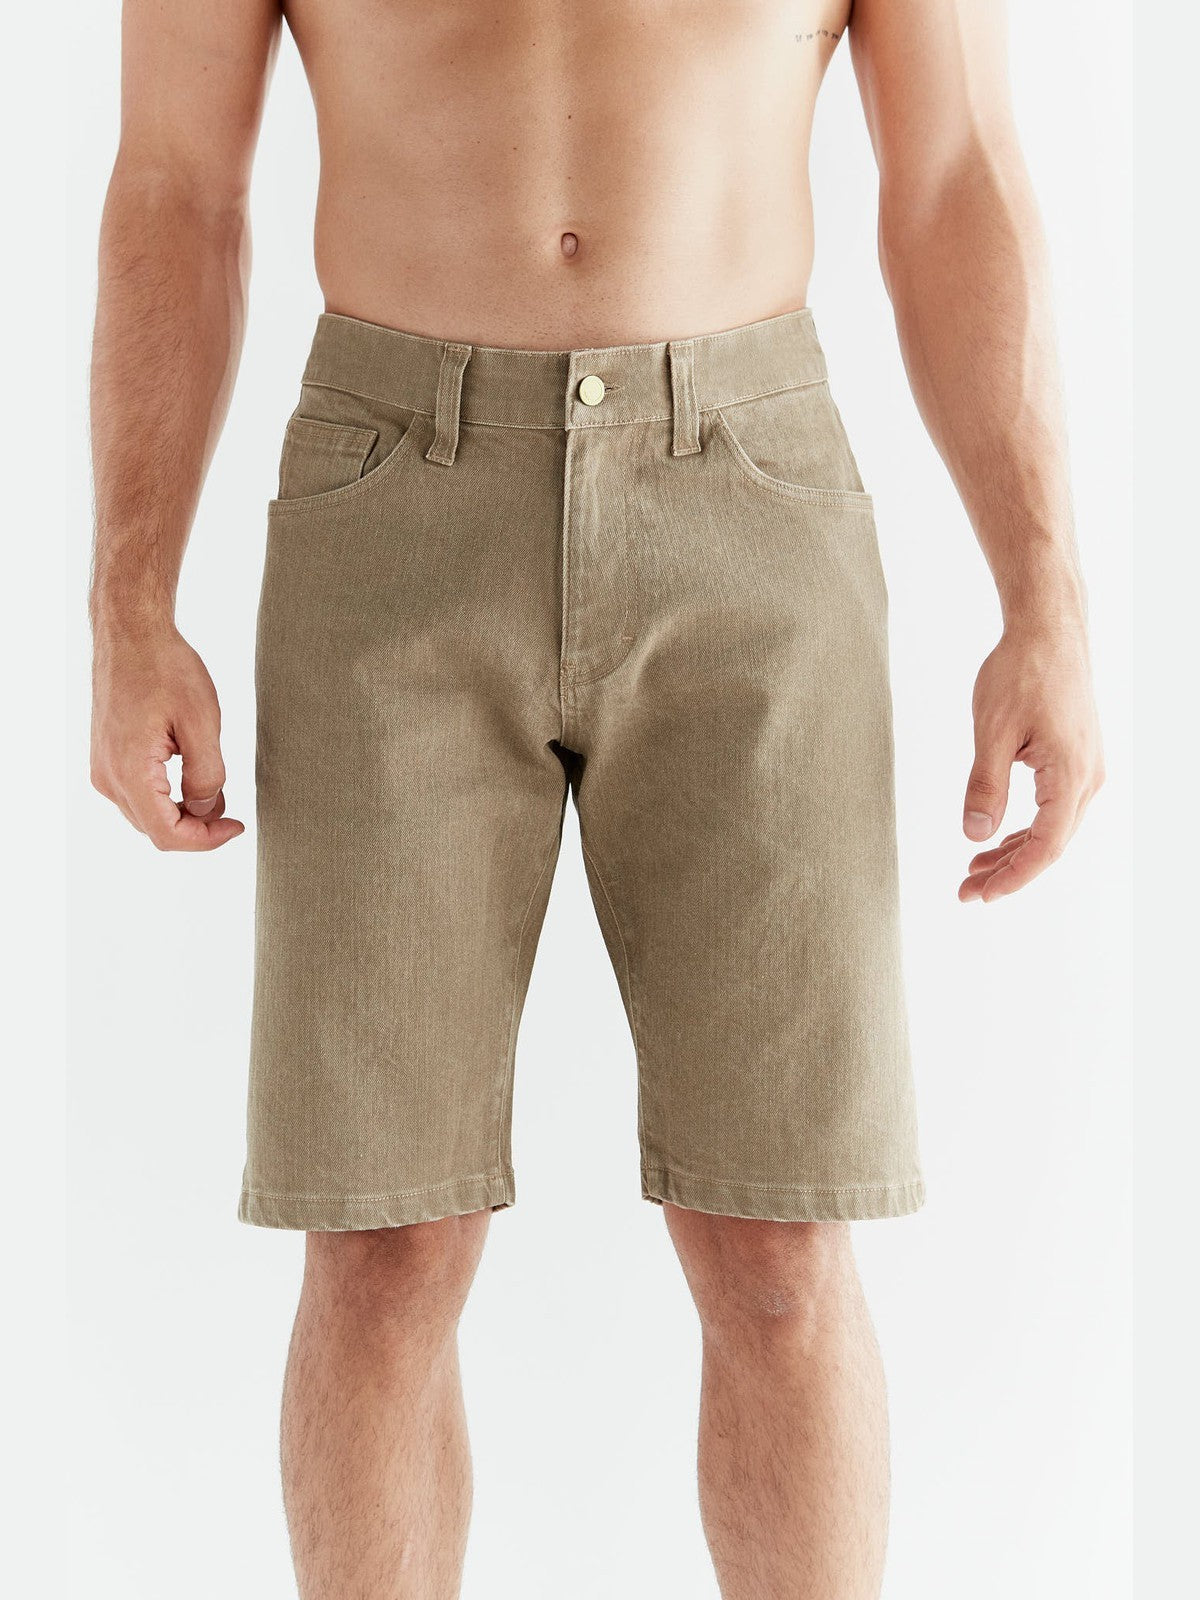 MA3018-403 | Men Denim Shorts in Ton Waschung - Caribe